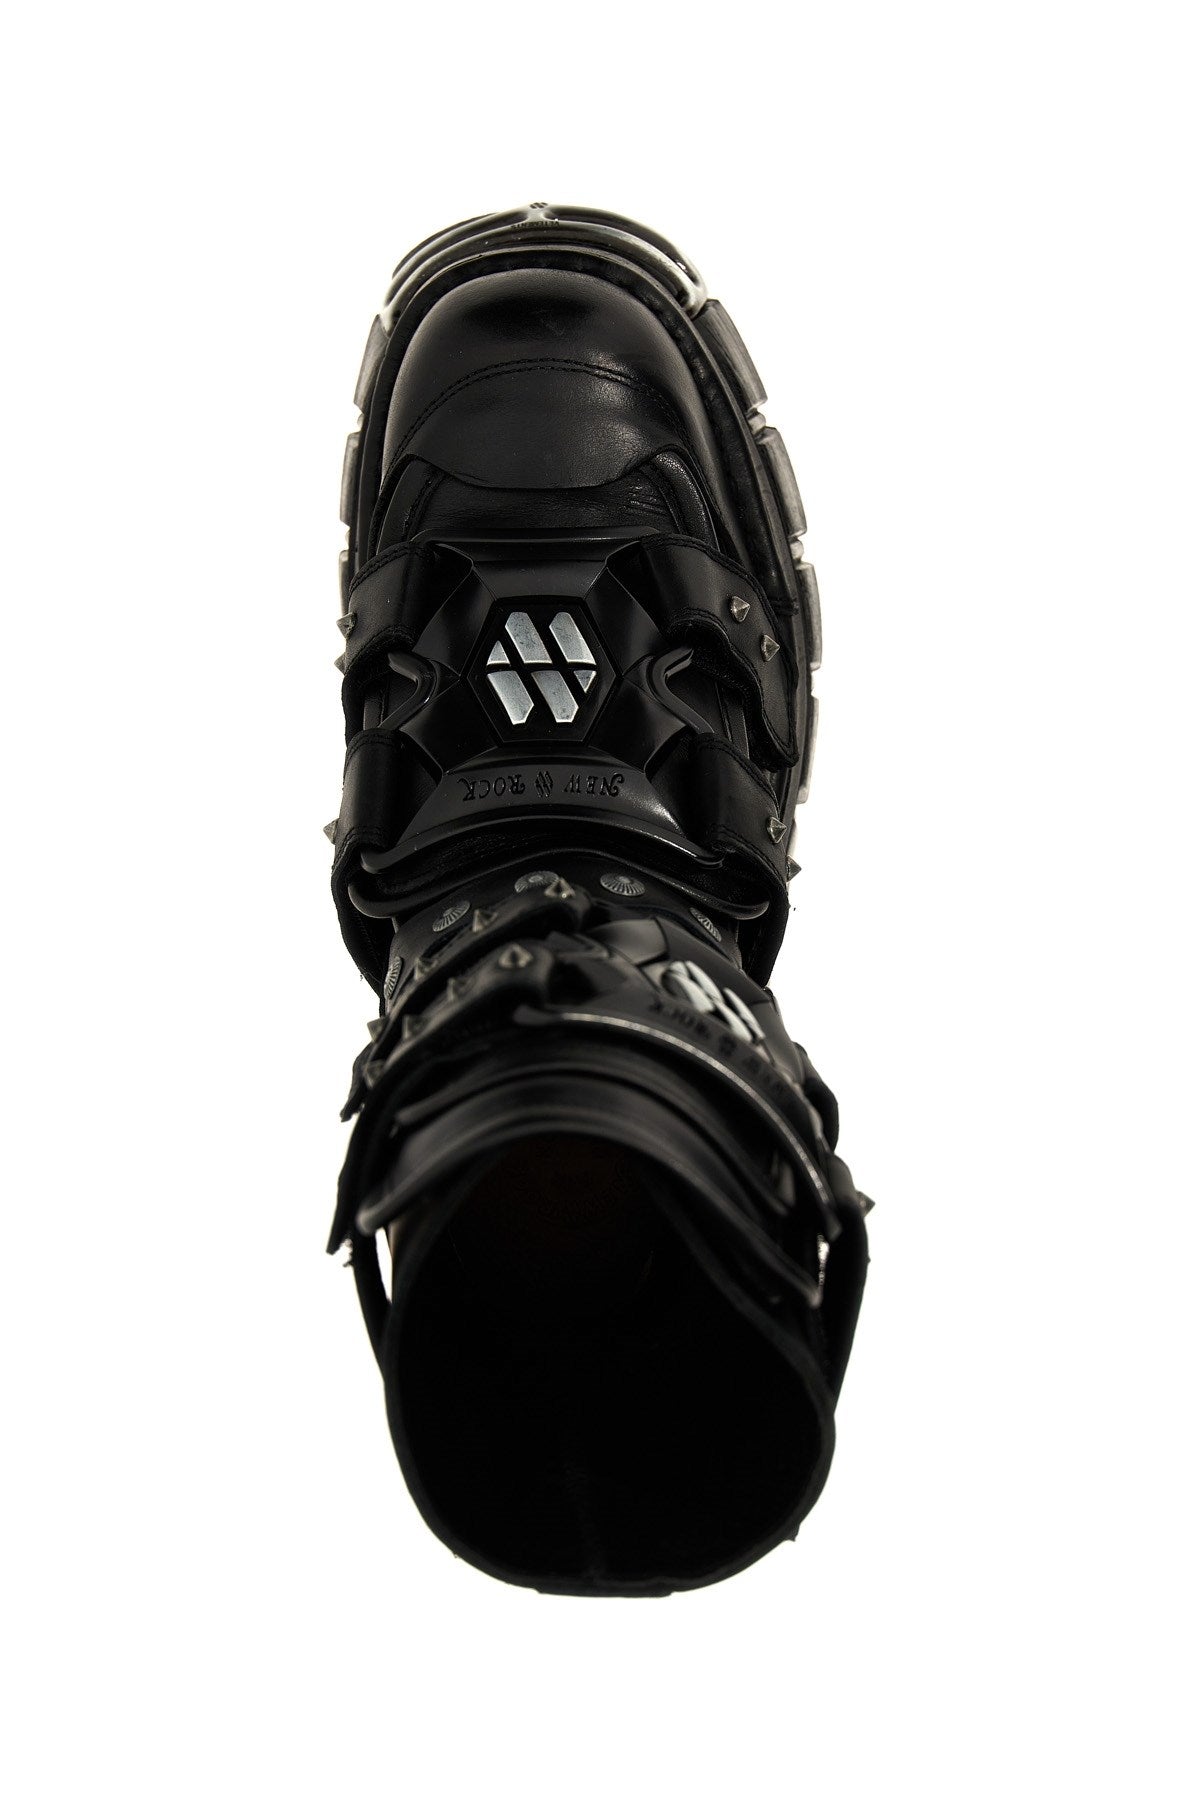 Vetements Women Vetements X New Rock 'Gamer' Boots